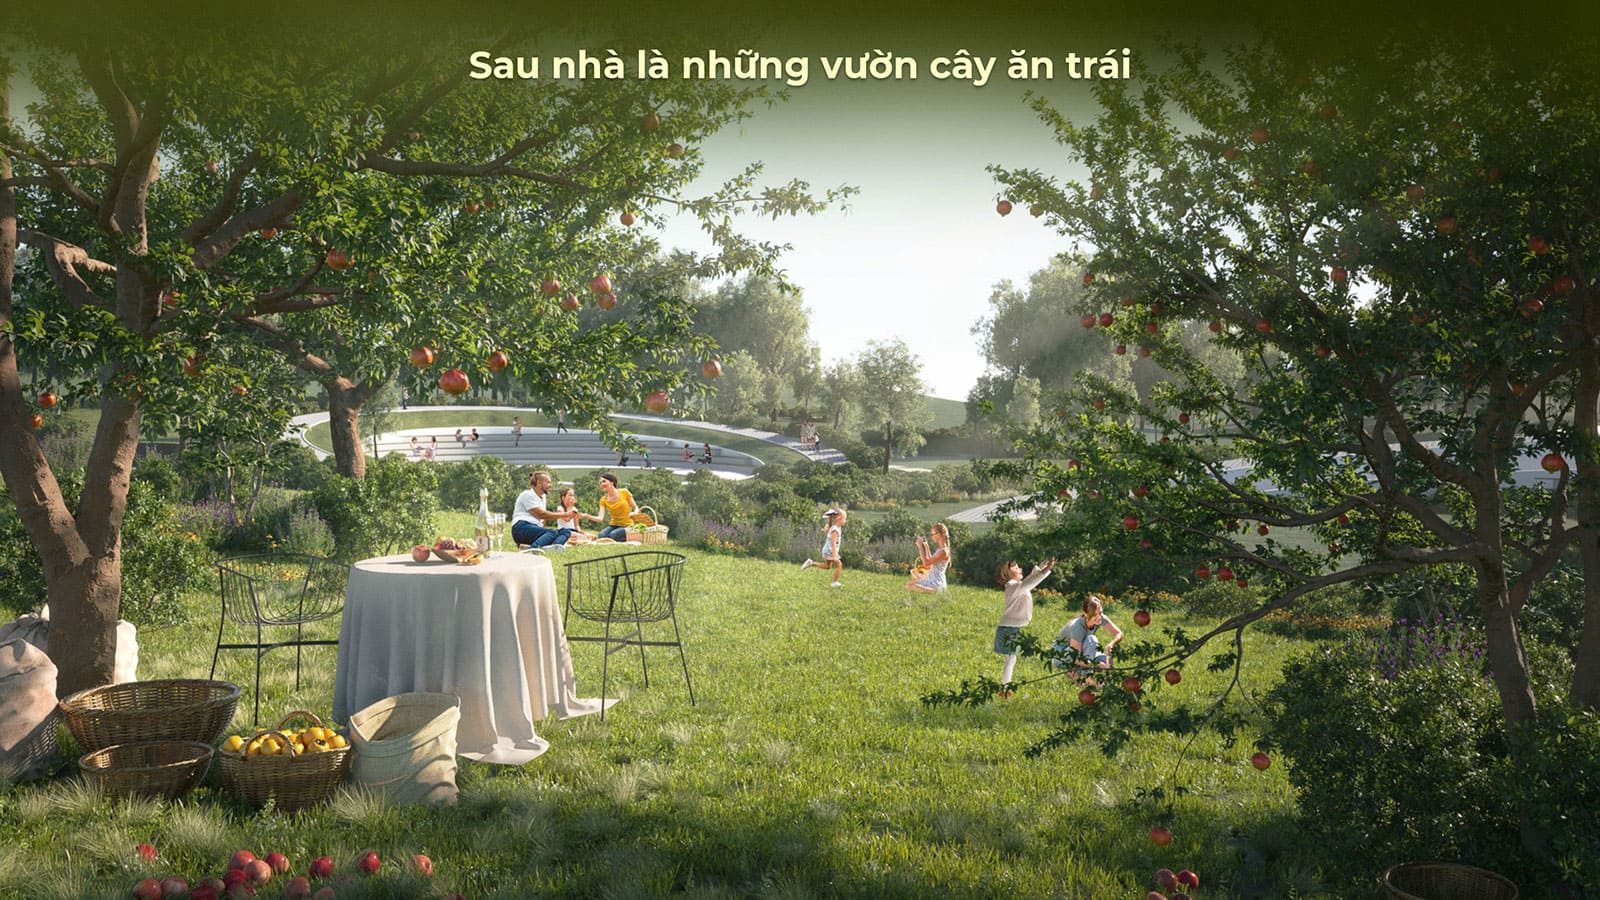 Phối cảnh tiện ích mang tiêu chuẩn Resort 6 sao tại khu đô thị Eco Village Saigon River.